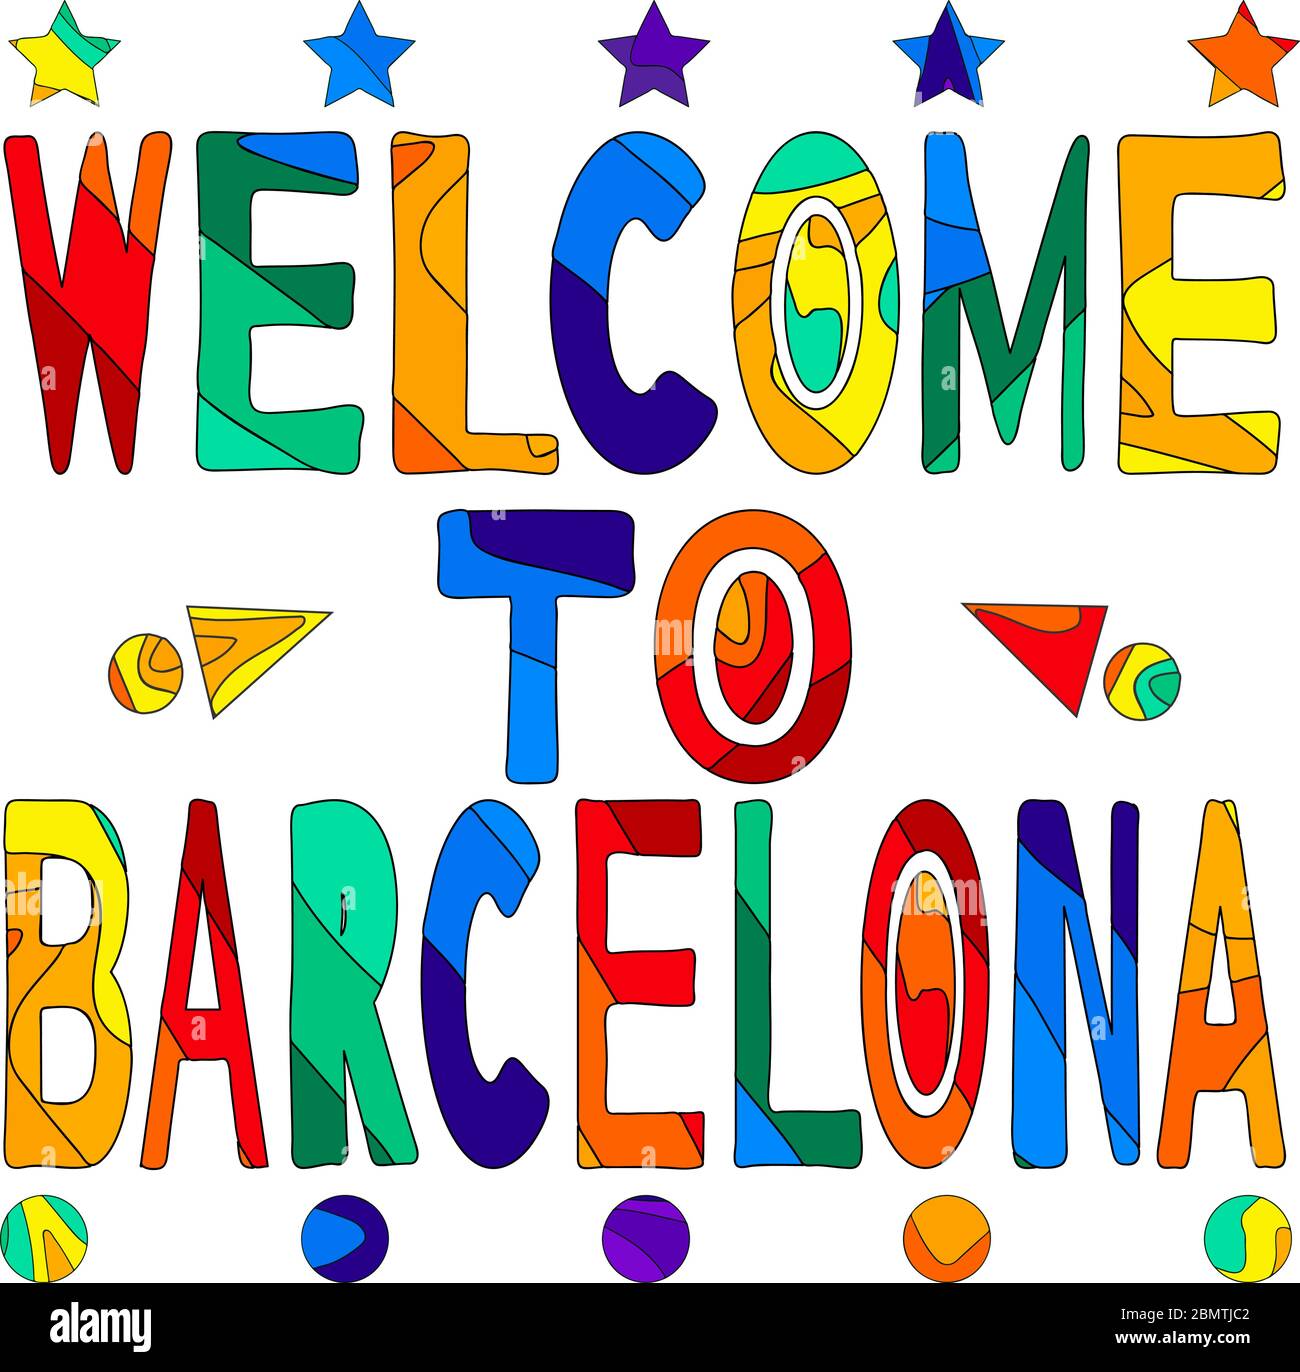 Bienvenido Barcelona